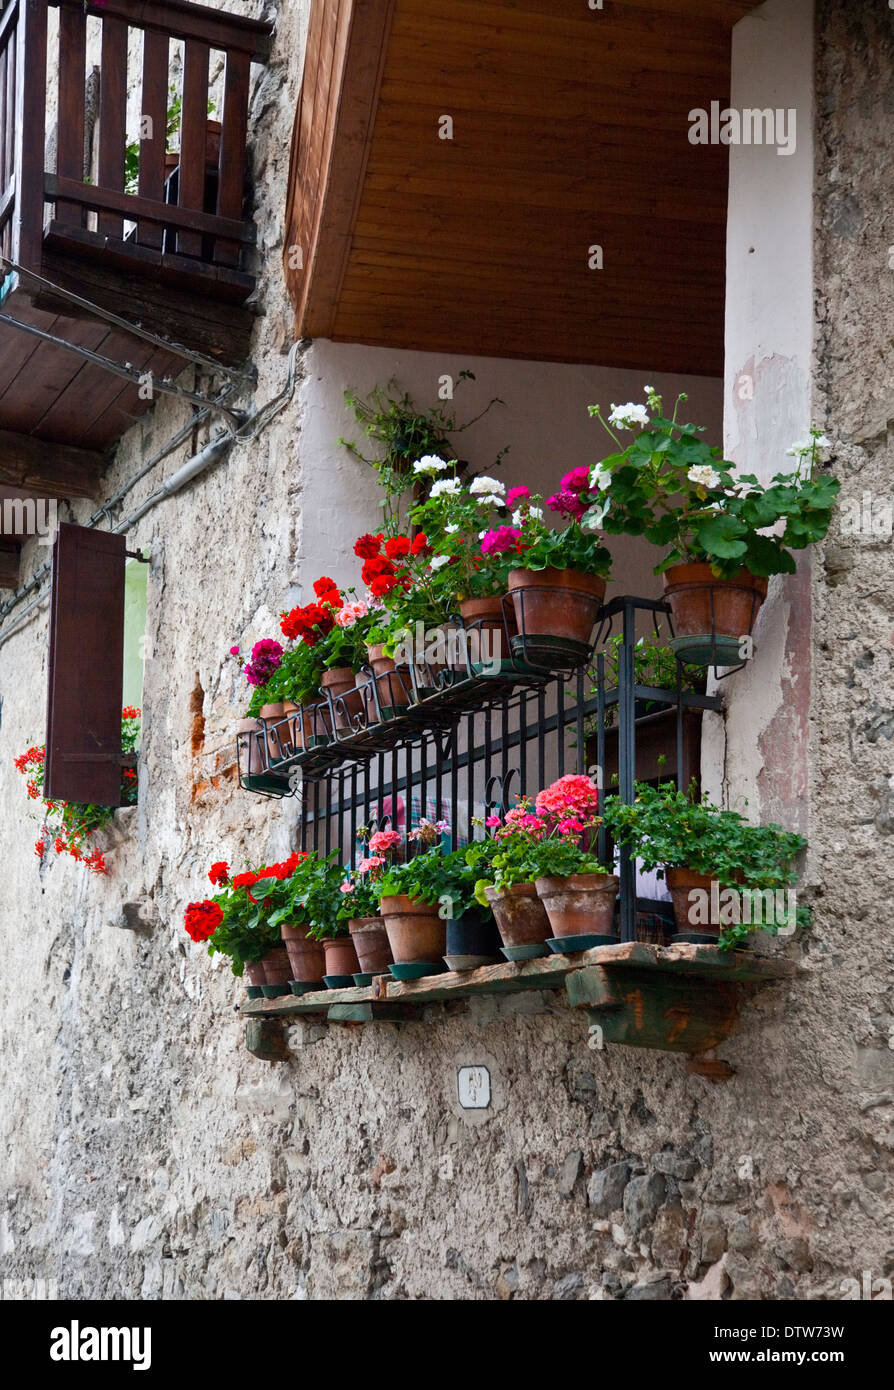 Balcon avec des fleurs, Presegno, Lombardie, Italie Banque D'Images